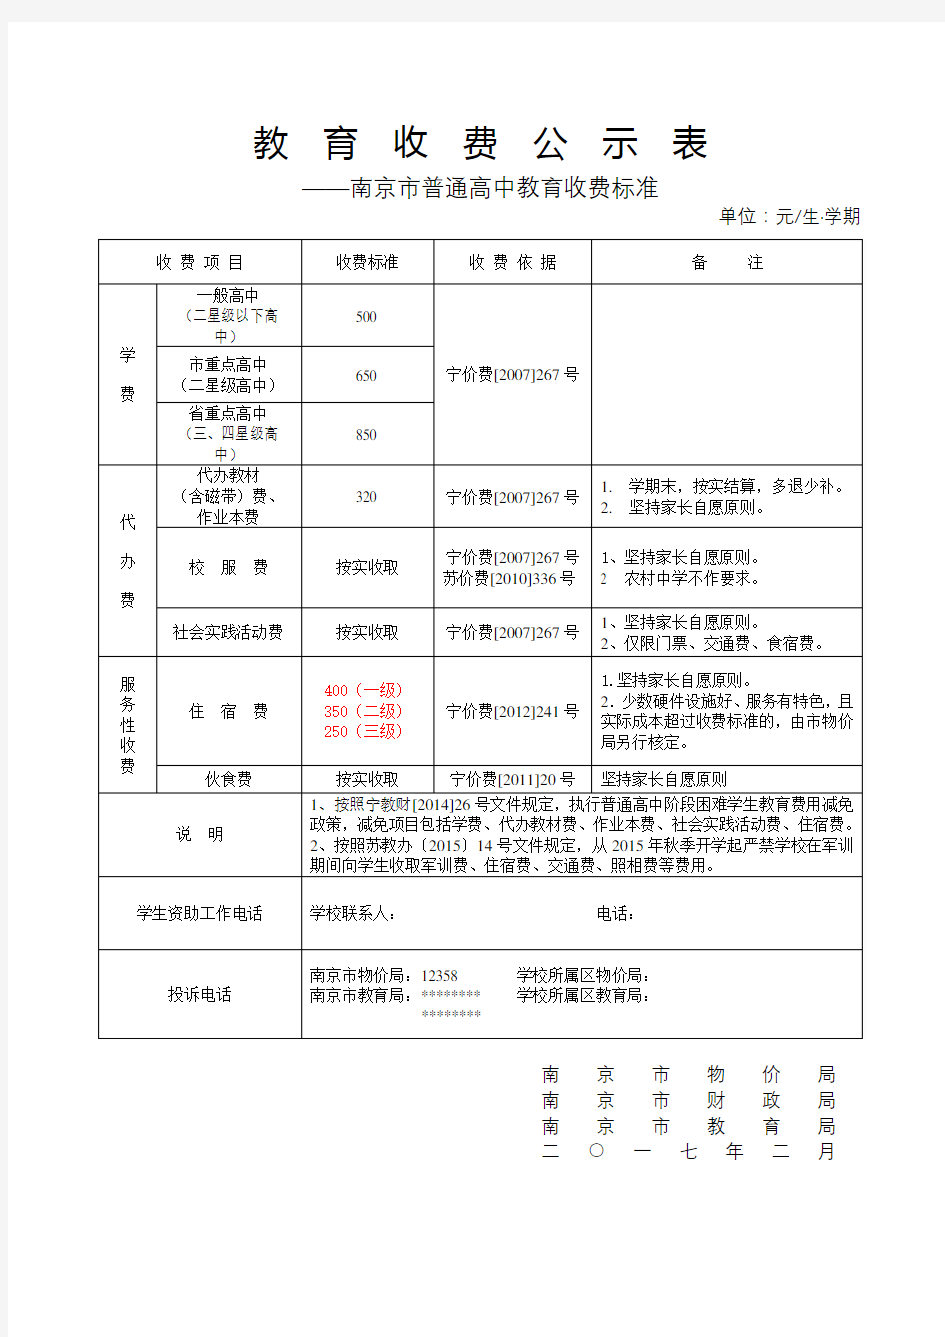 教育收费公示表——南京市普通高中教育收费标准【模板】